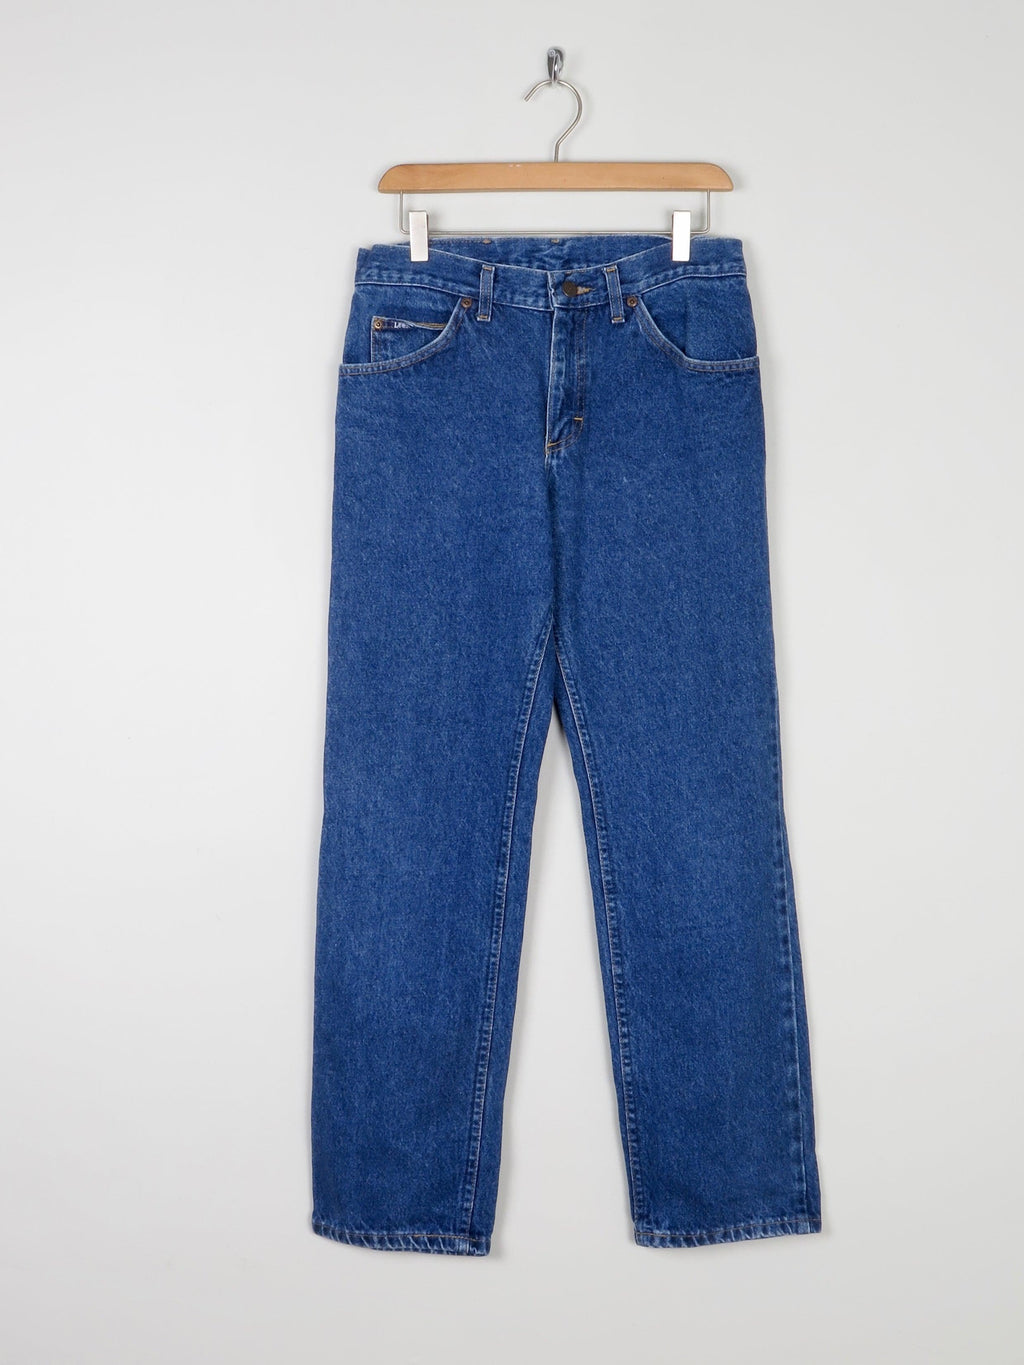 Blue Vintage Lee Jeans 31W - The Harlequin